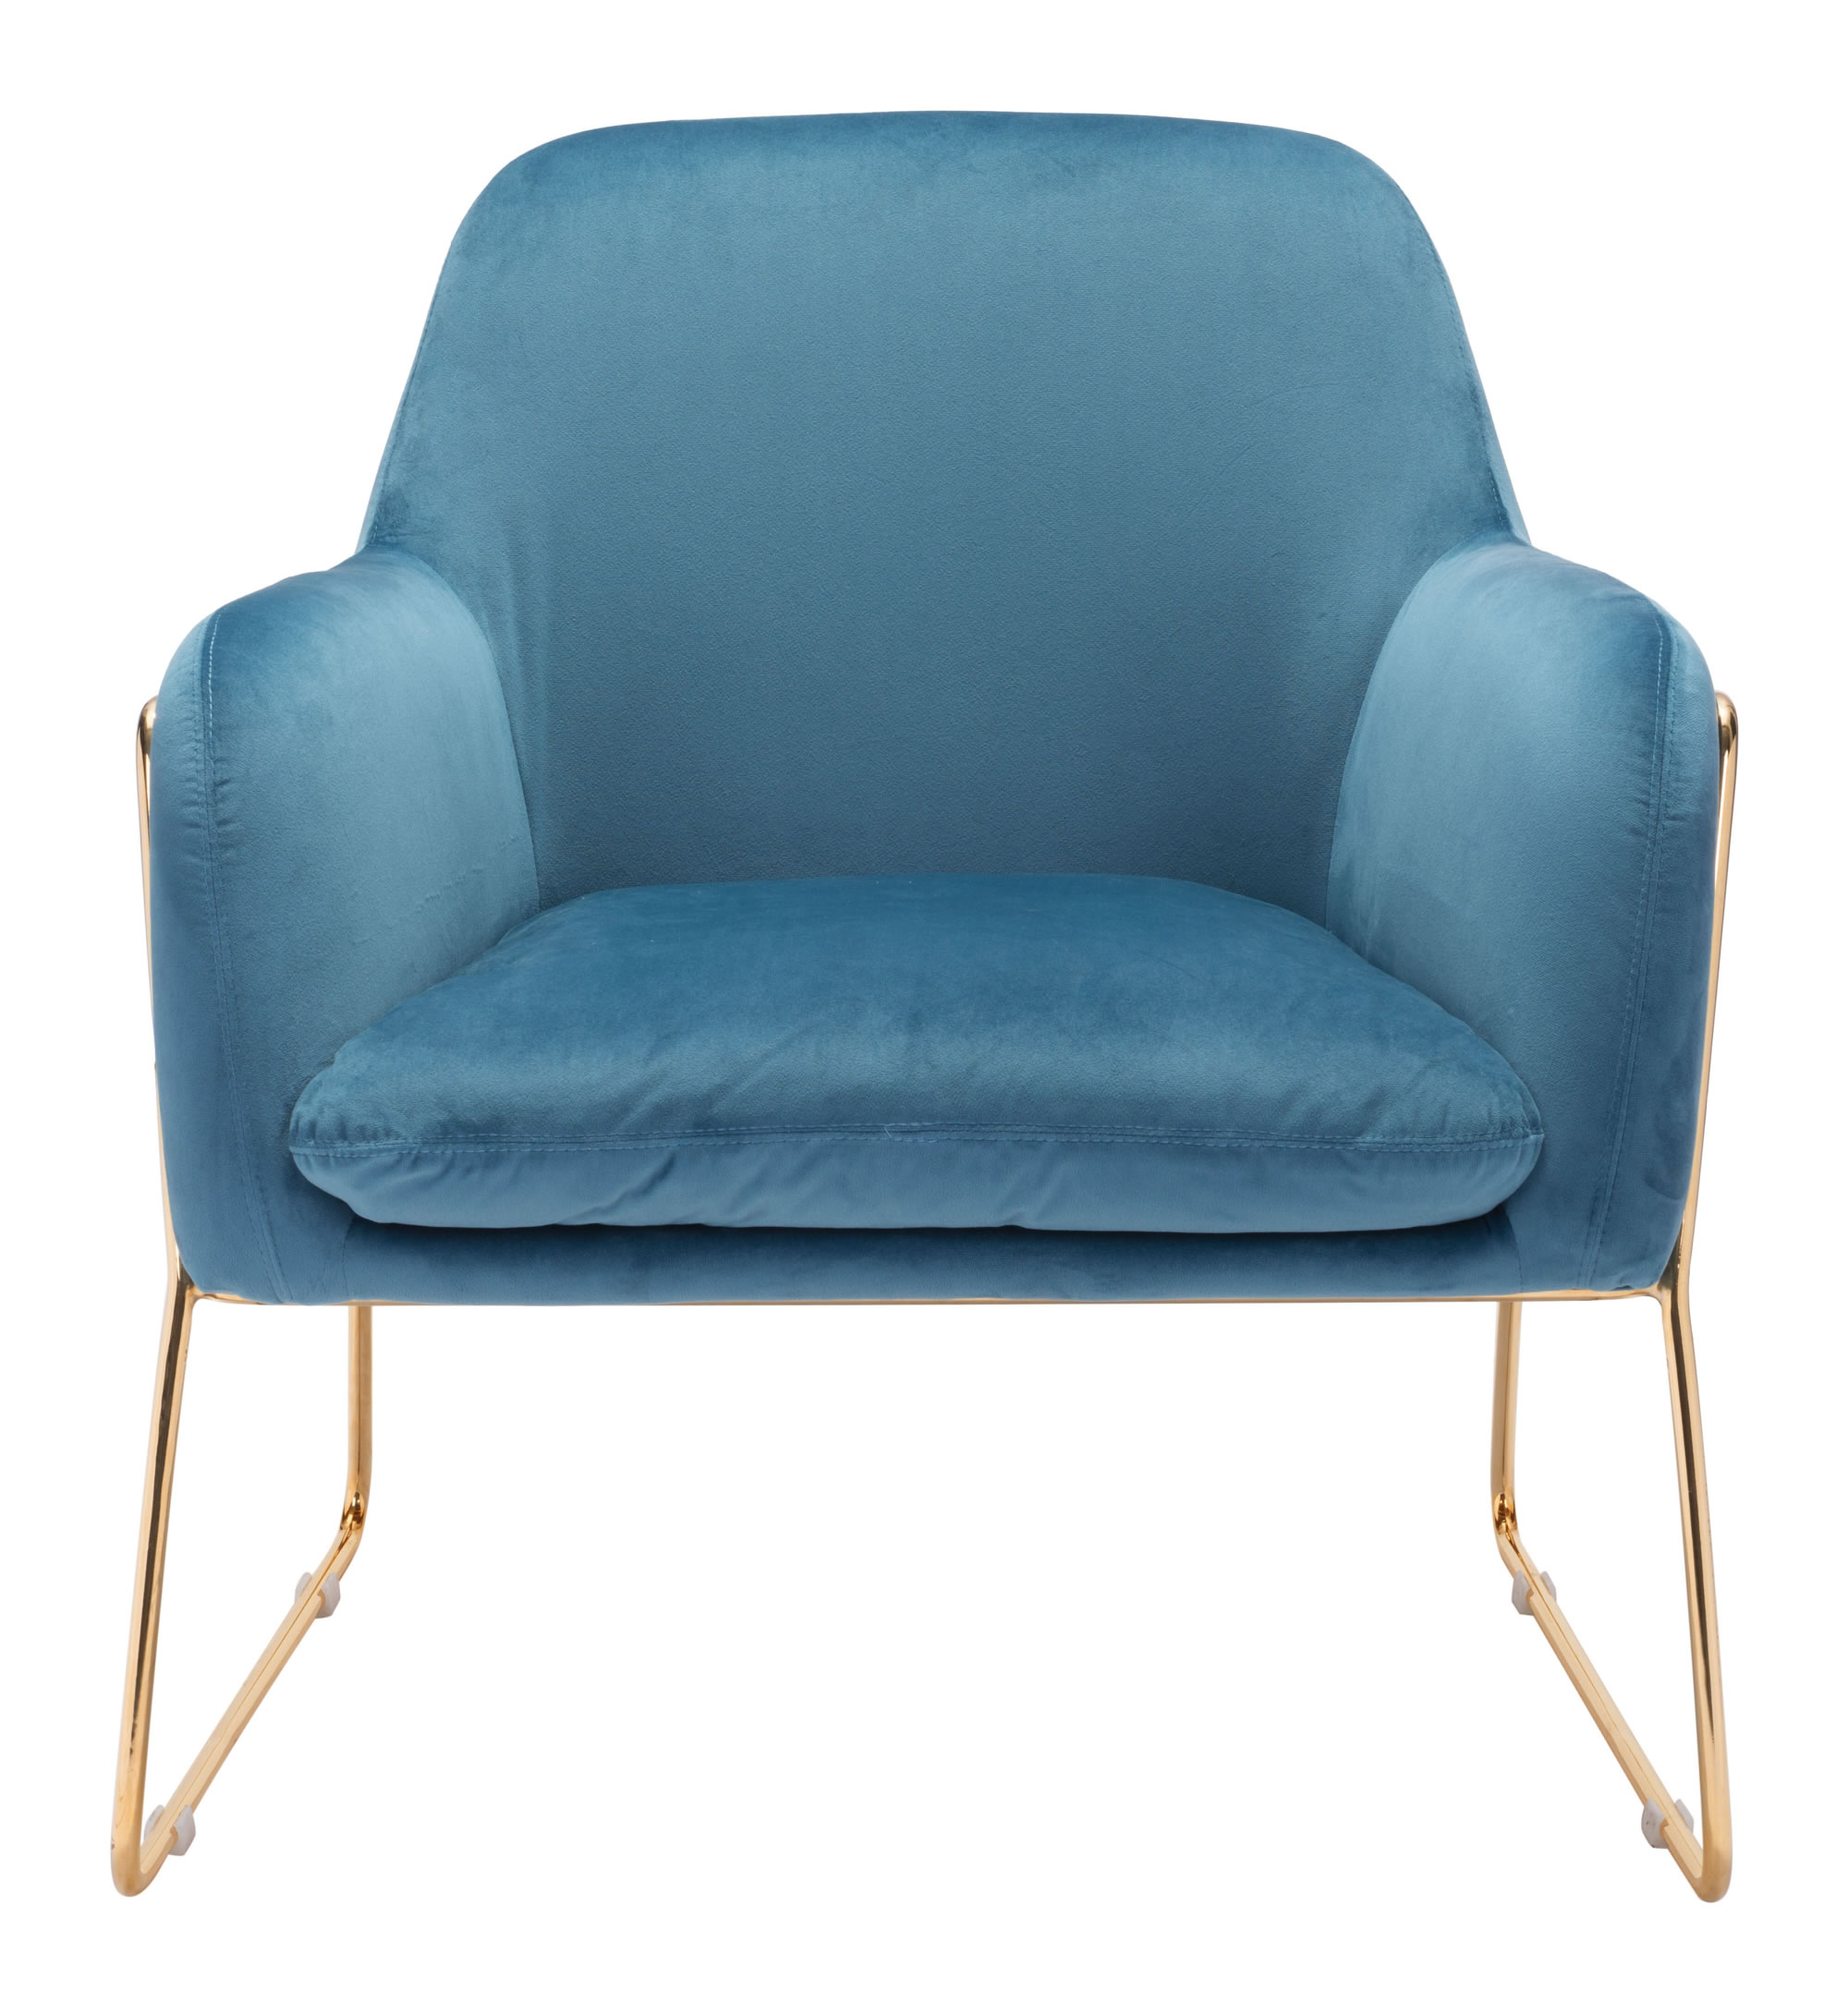 29.9" x 30.3" x 31.7" Blue Velvet Chromed Steel Arm Chair